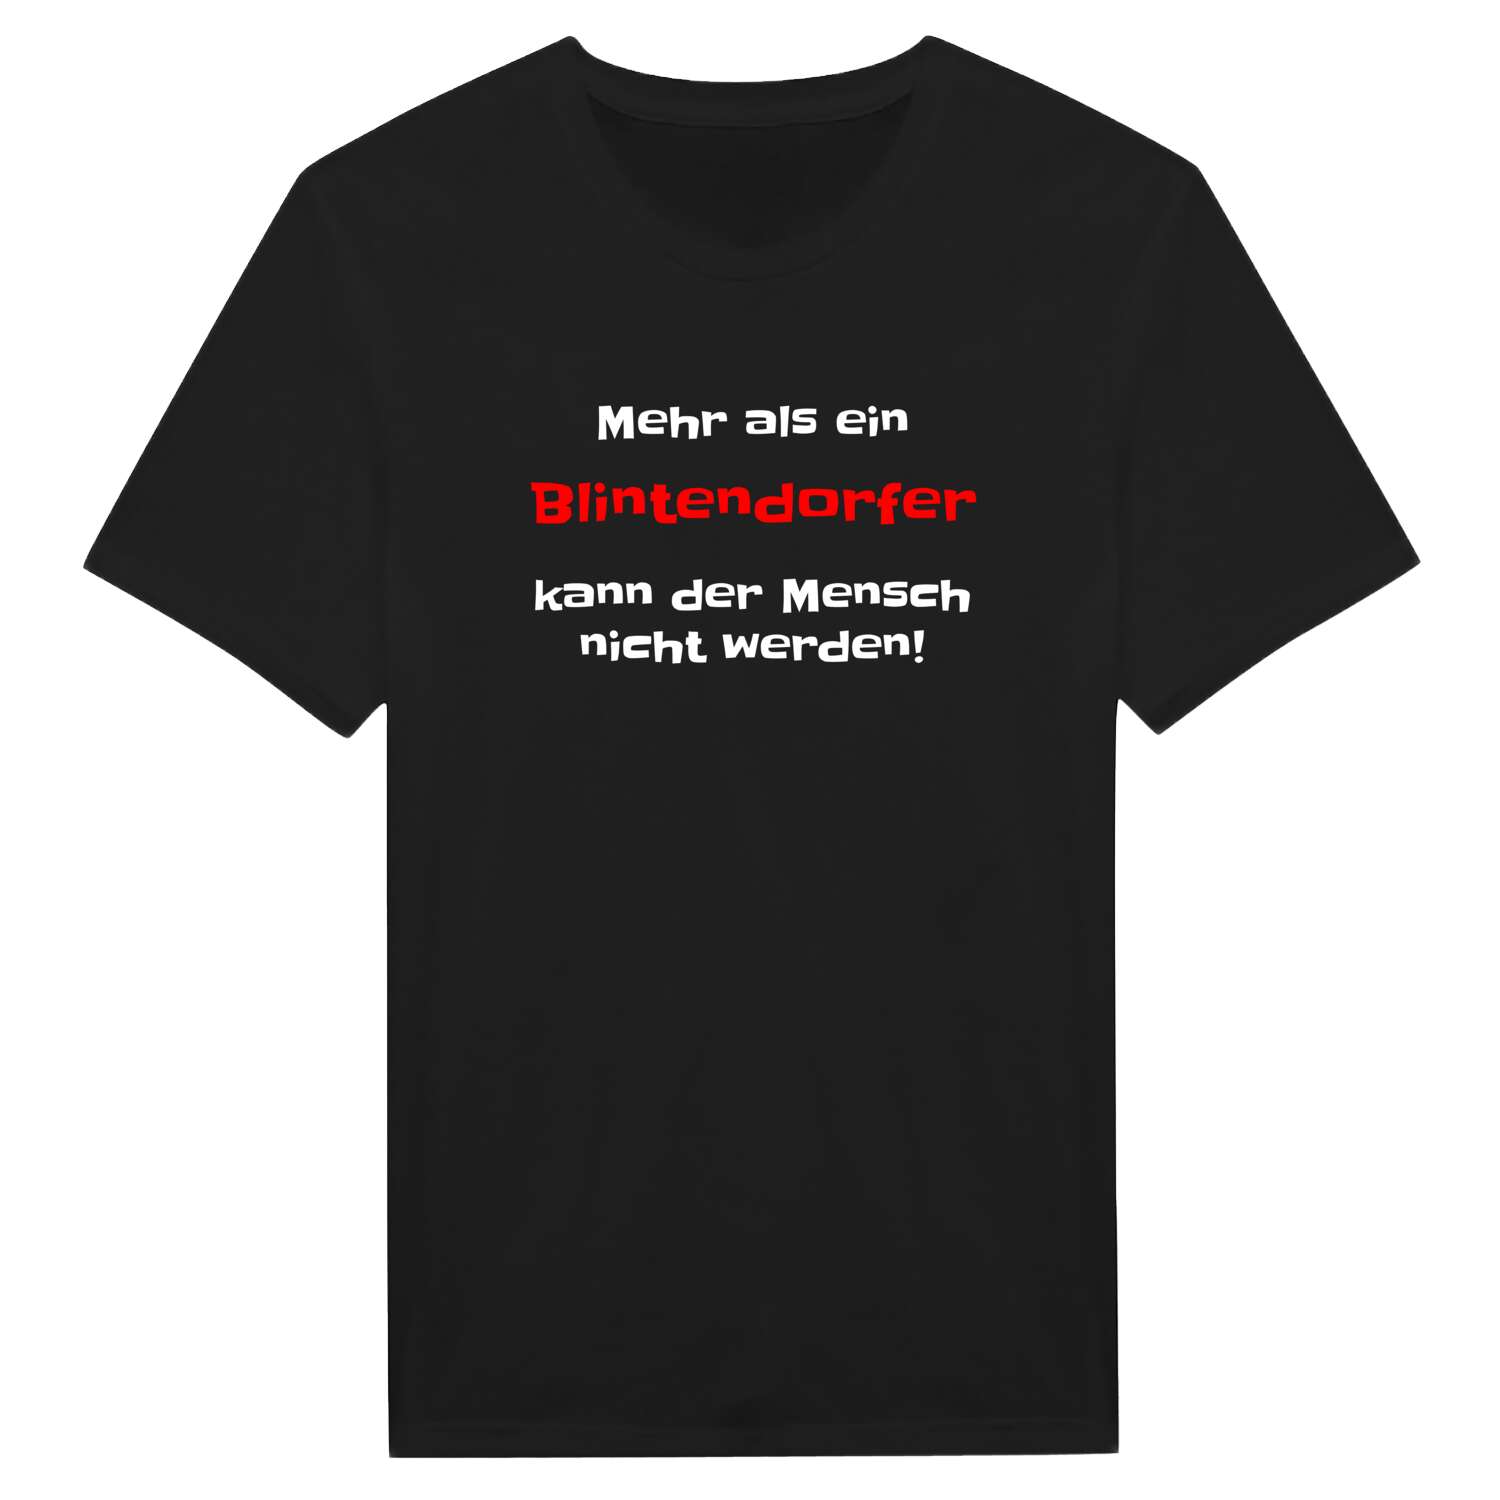 Blintendorf T-Shirt »Mehr als ein«